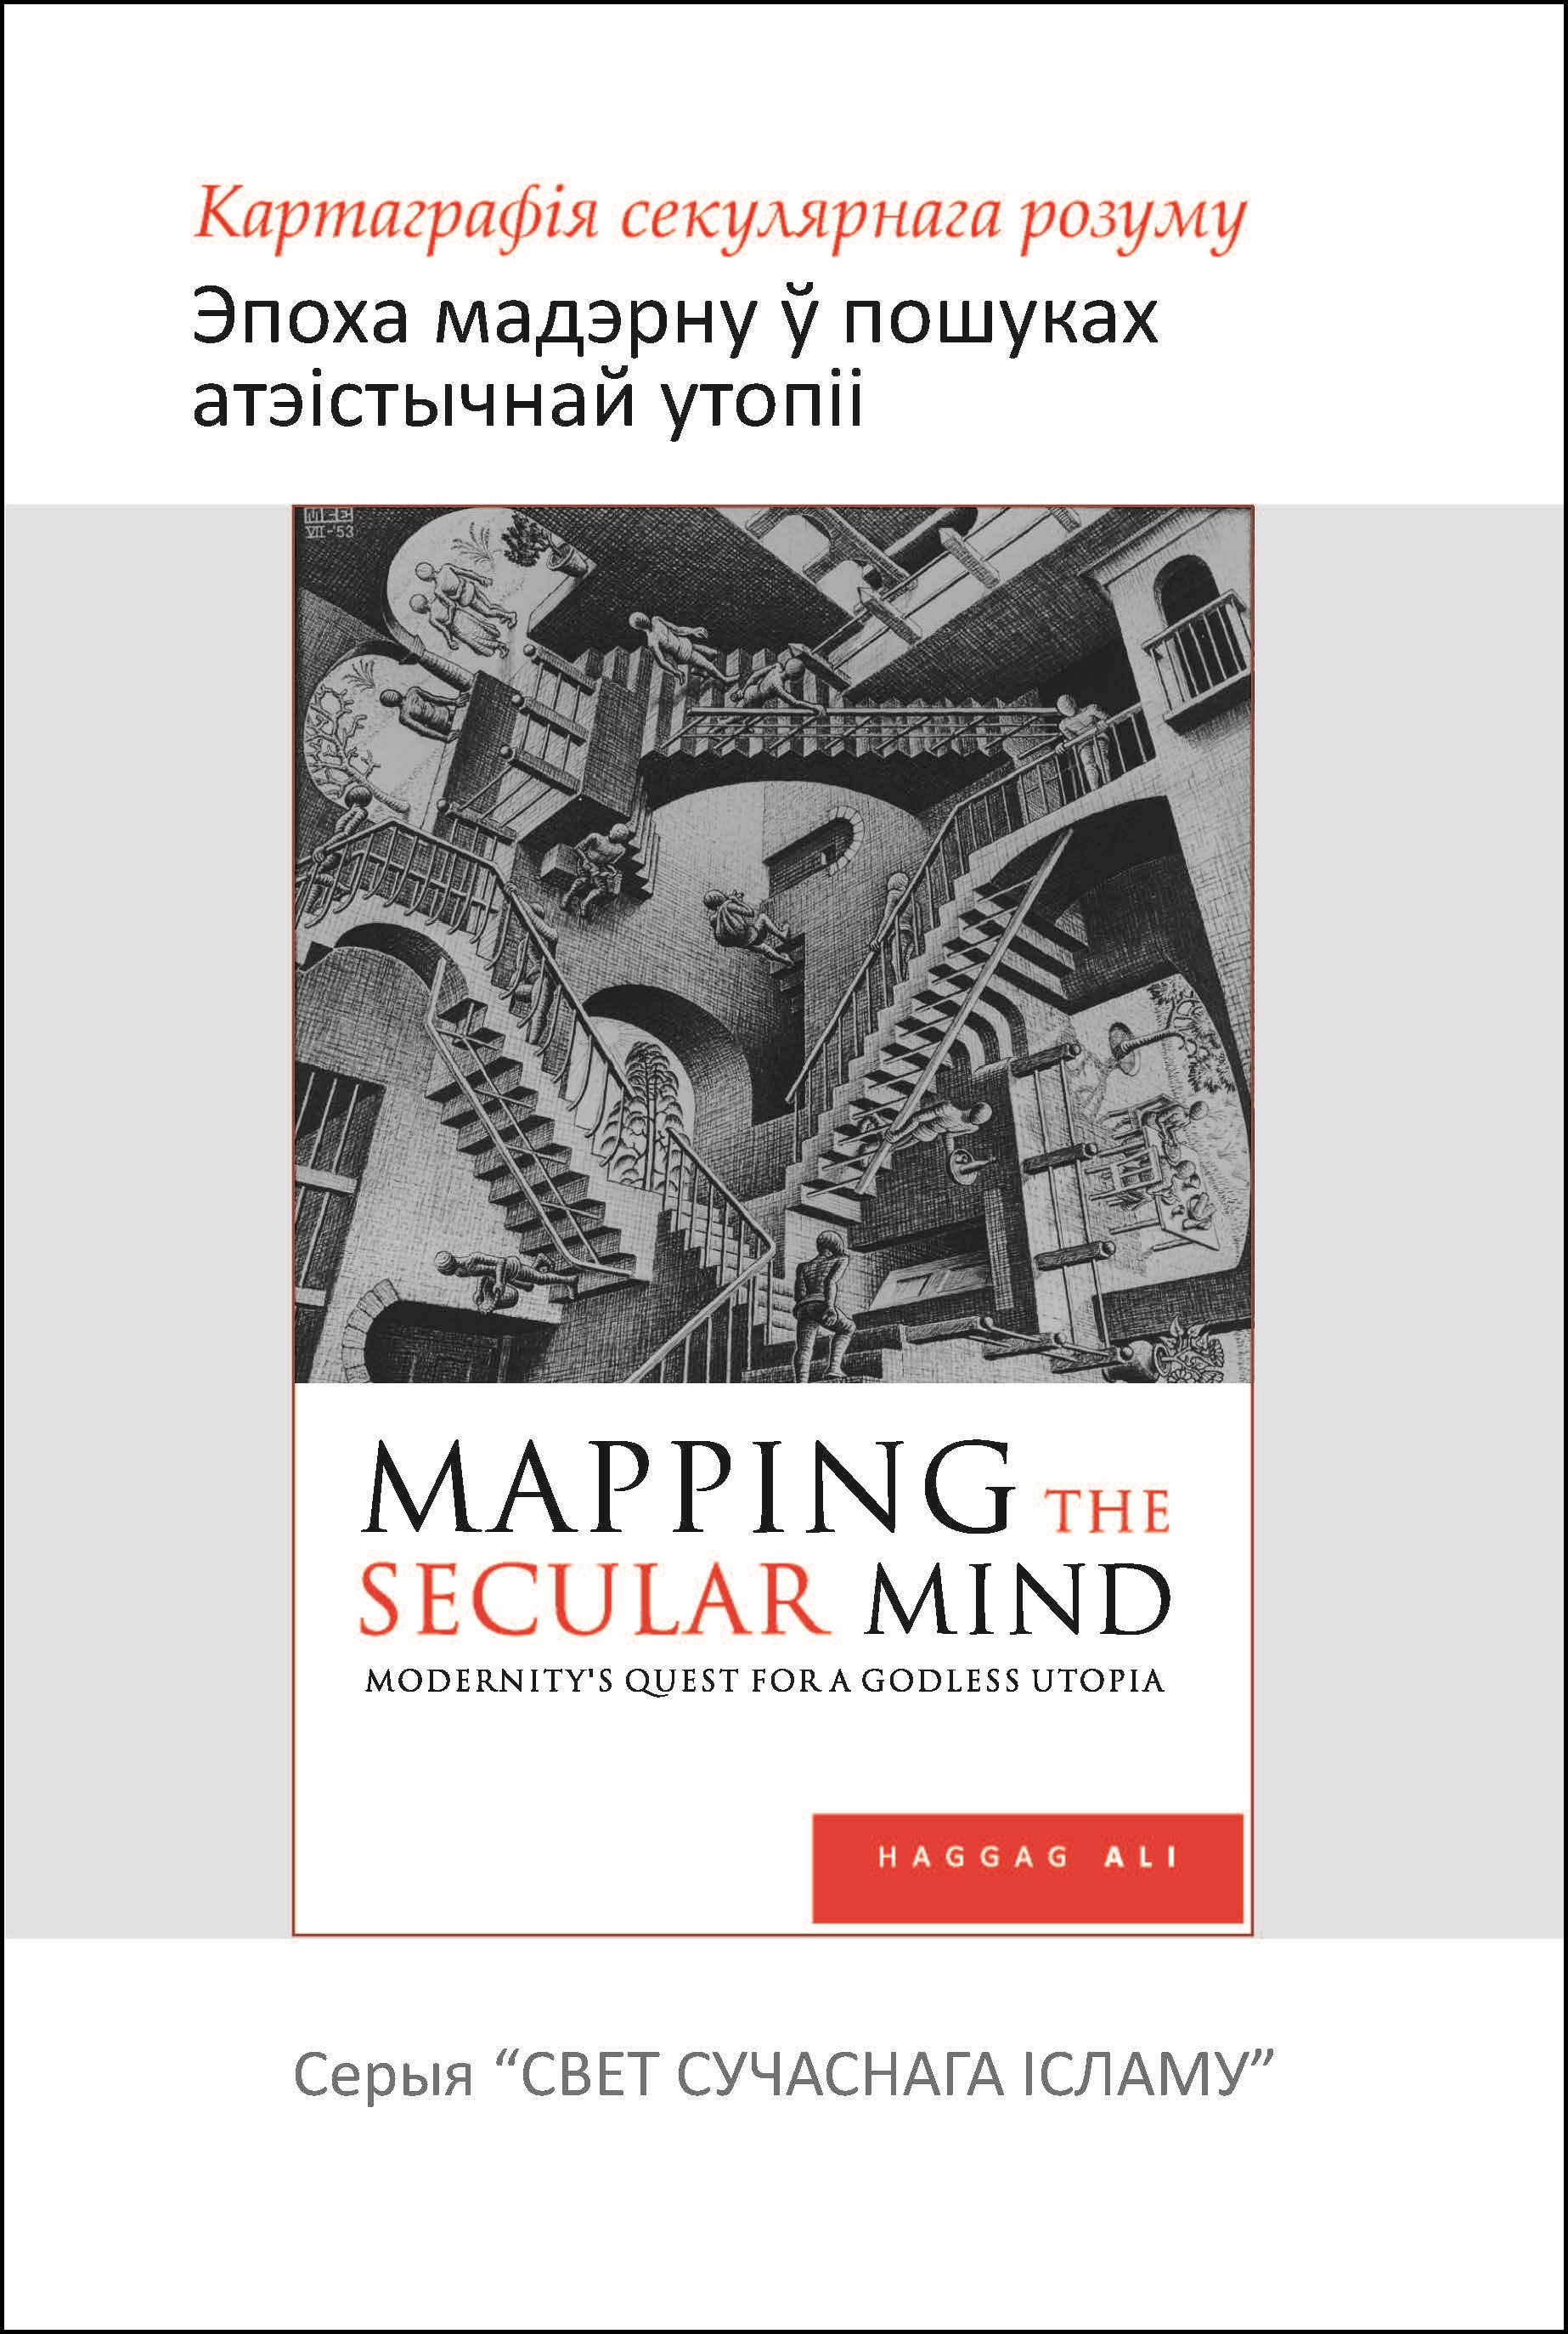 Belarus: Картаграфія секулярнага розуму: эпоха мадэрну ў пошуках атэістычнай утопіі (Book-In-Breif: Mapping the Secular Mind: Modernity’s Quest for A Godless Utopia)